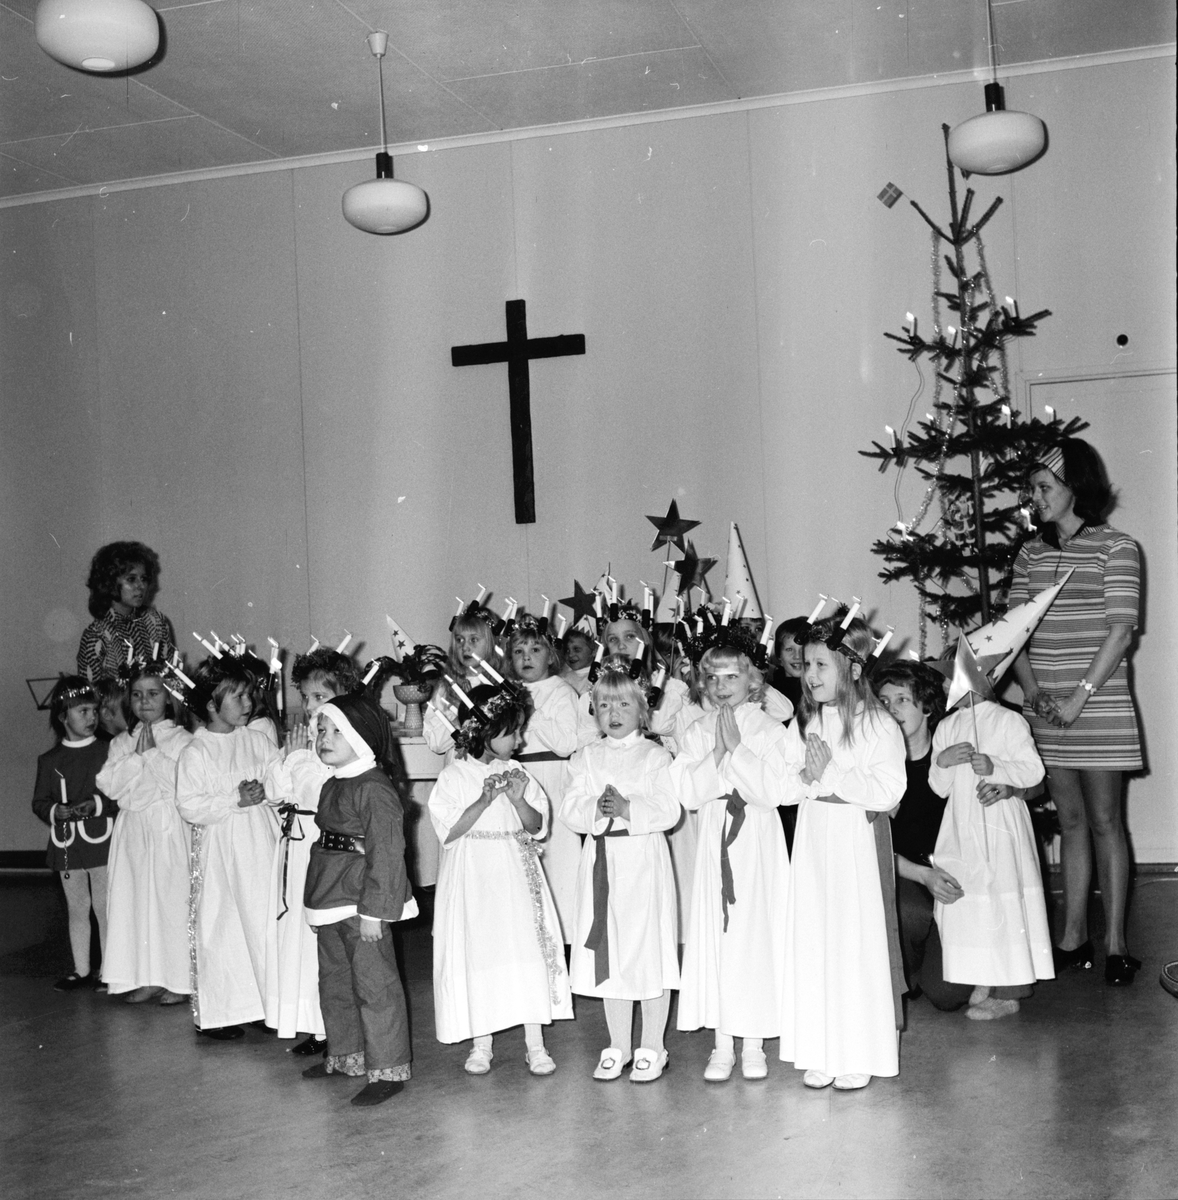 Arbrå,
Barntimme,
Julfest,
December 1971